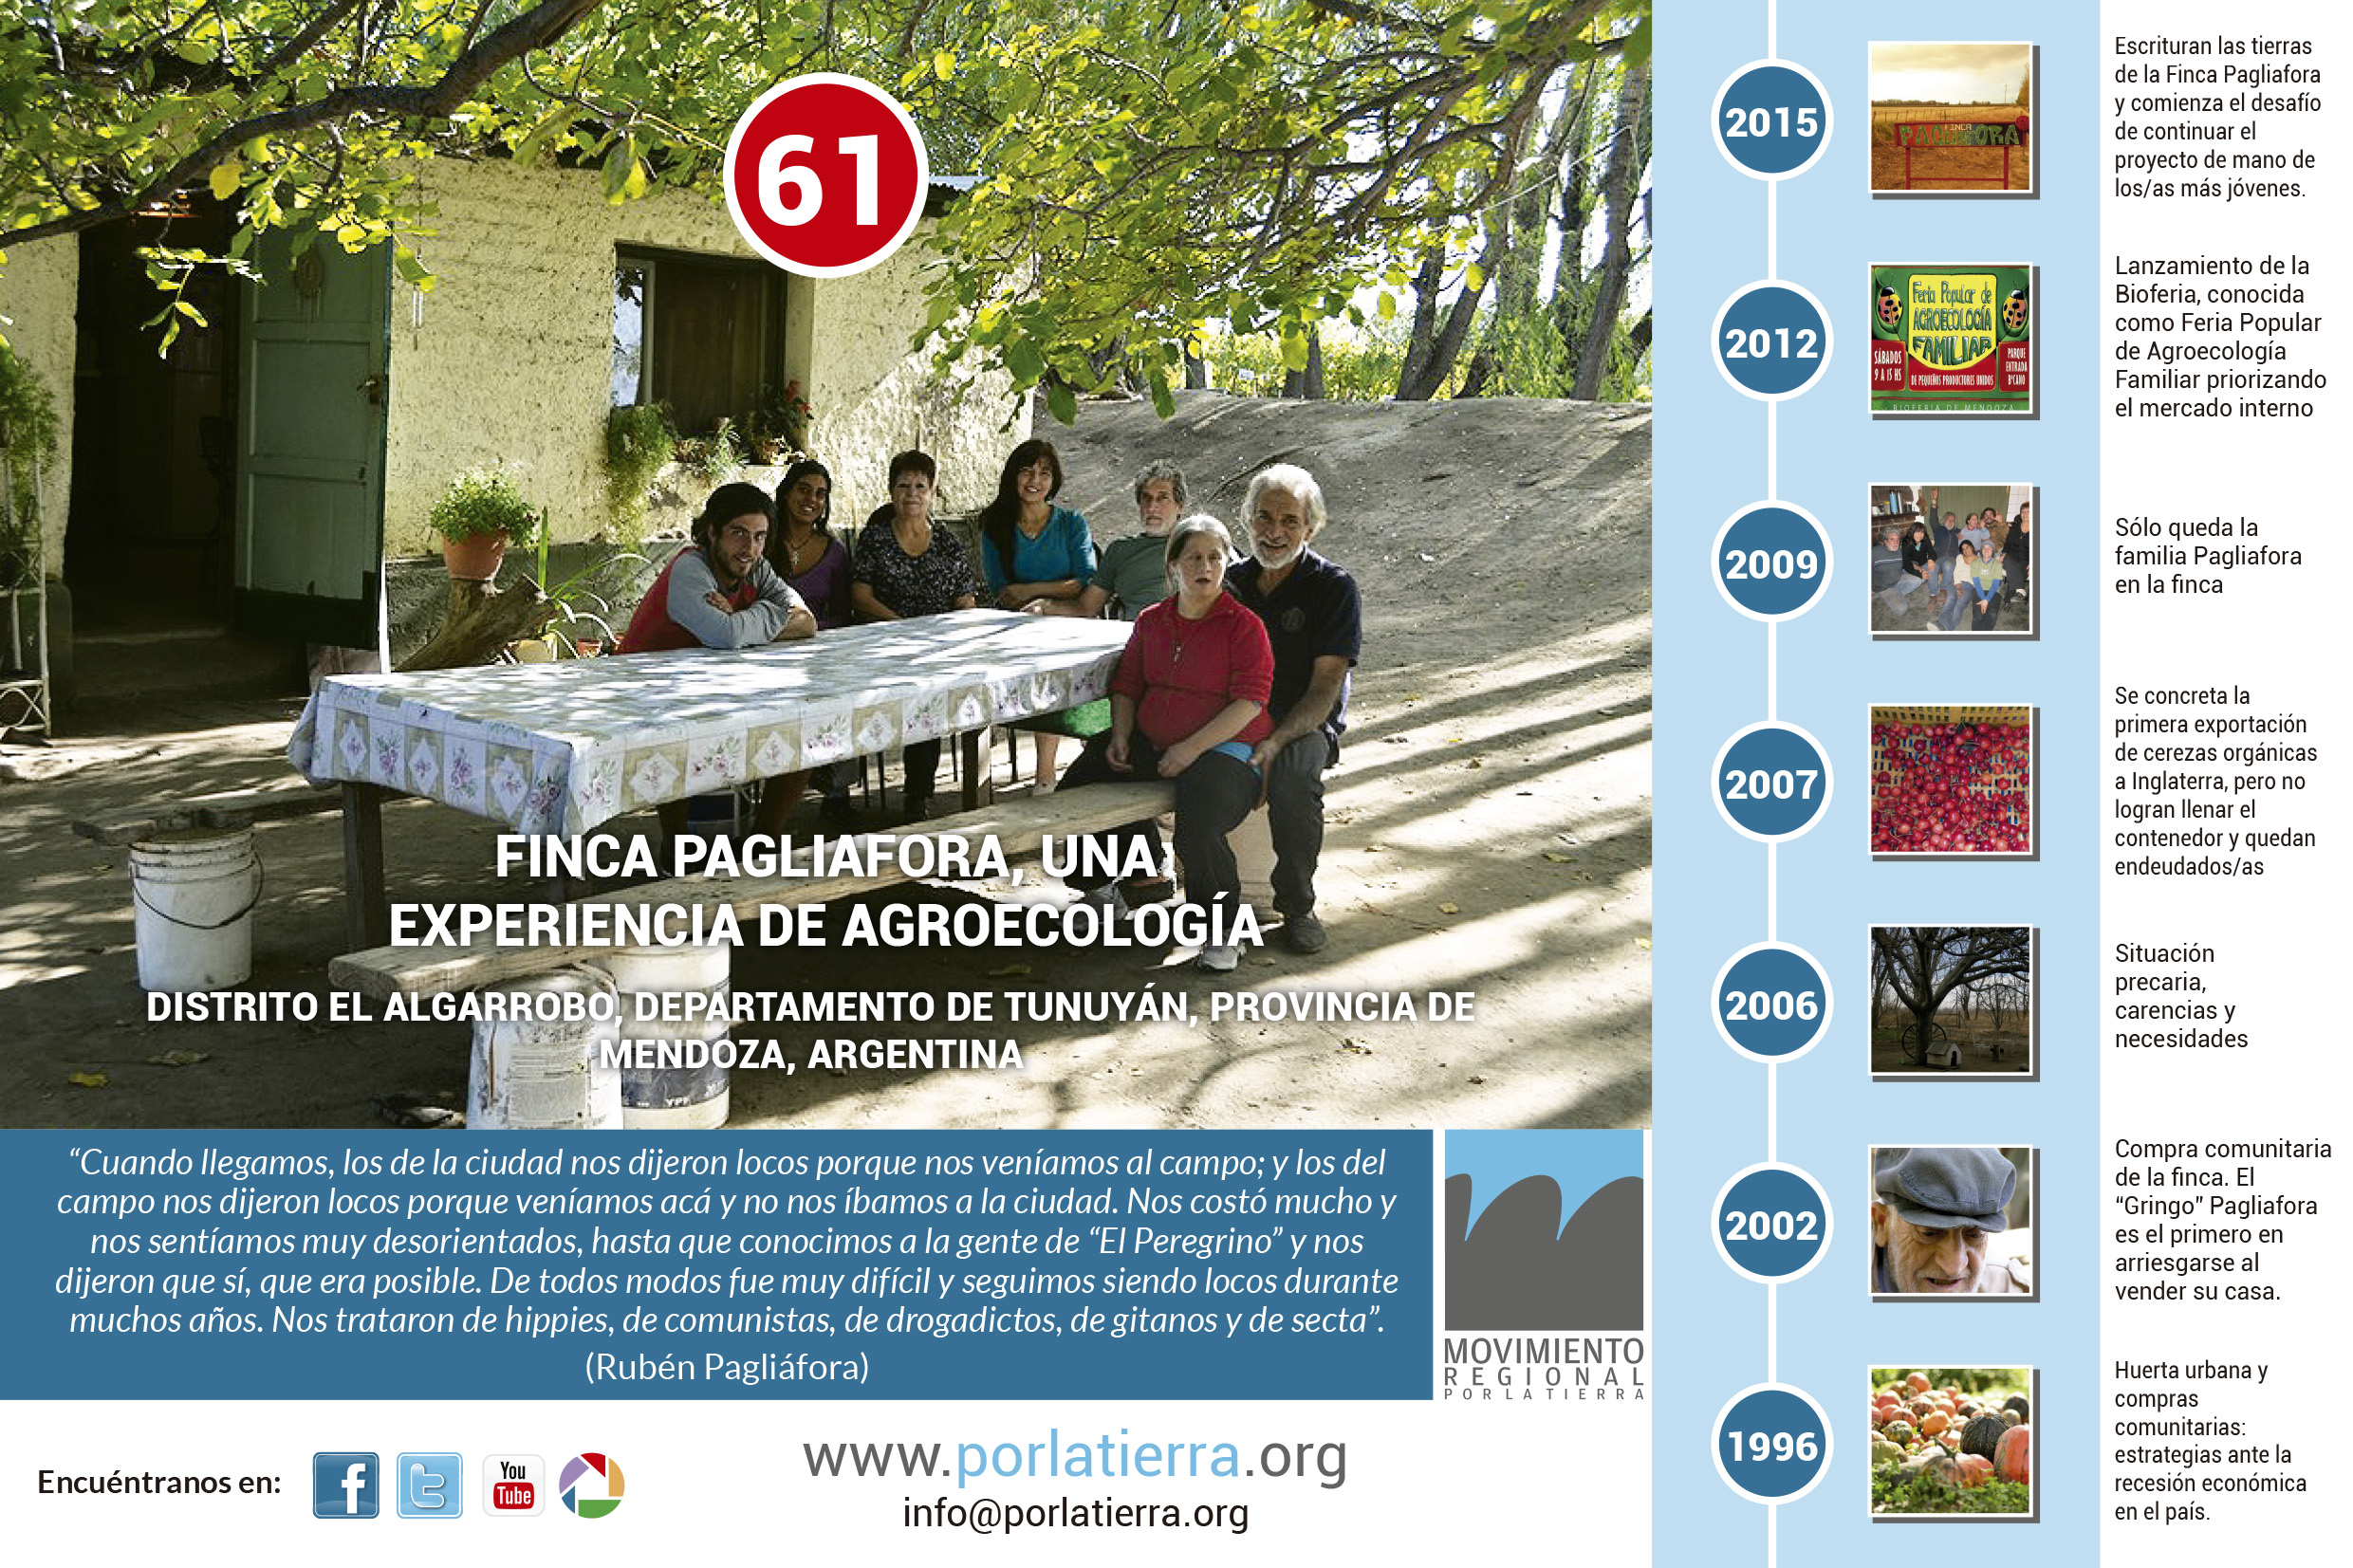 Finca Pagliafora, una experiencia de agroecología en Mendoza, Argentina